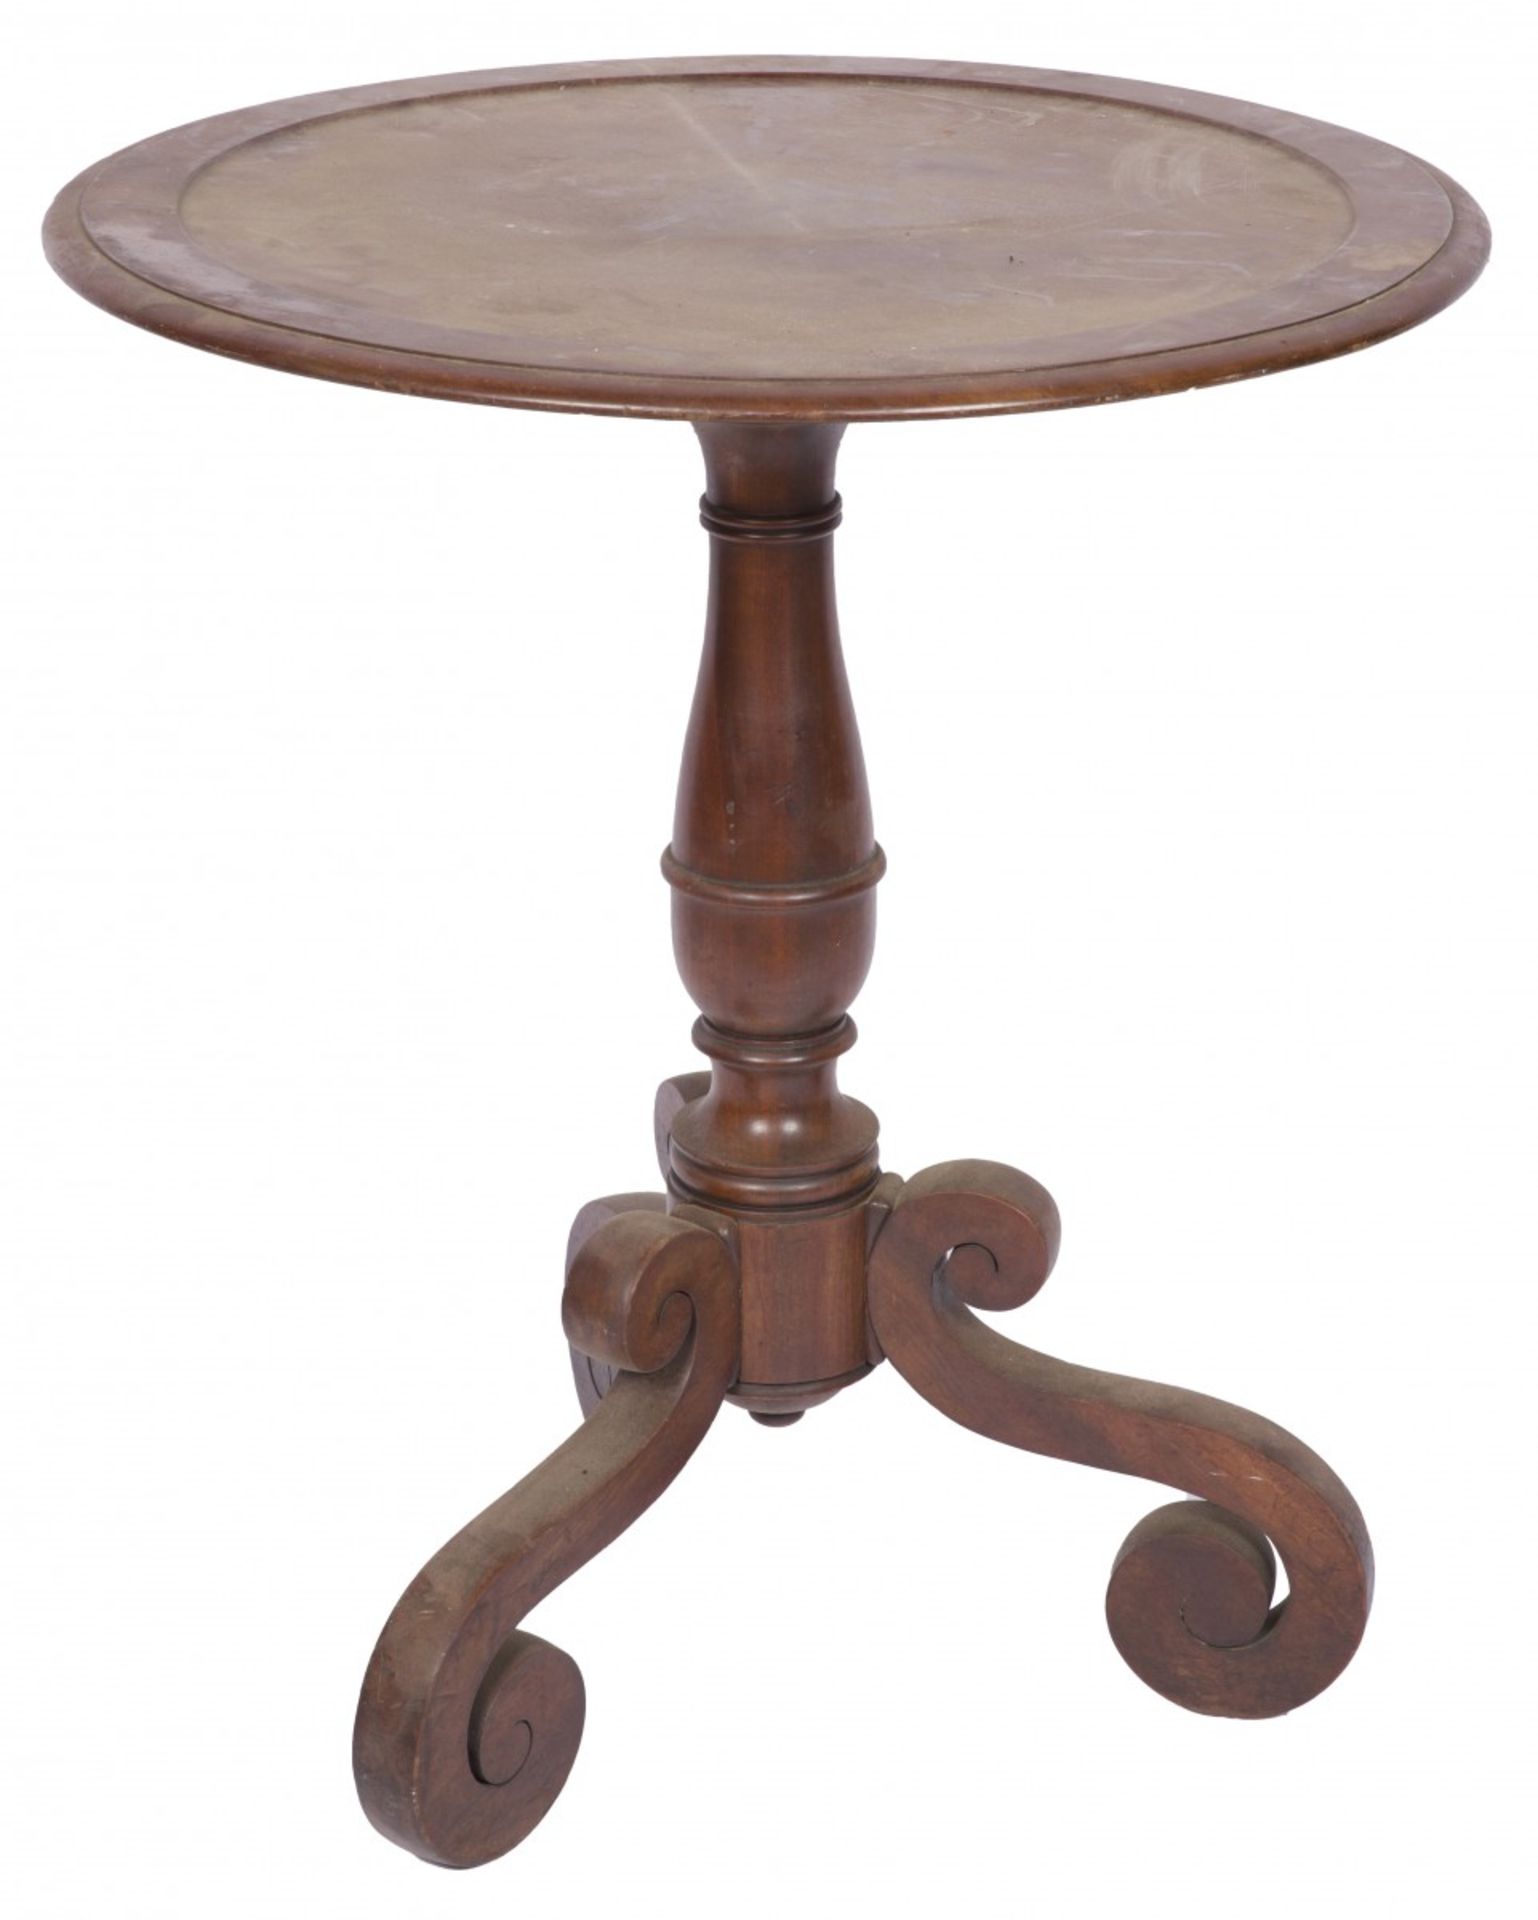 A round mahogany table, Dutch, ca. 1900.